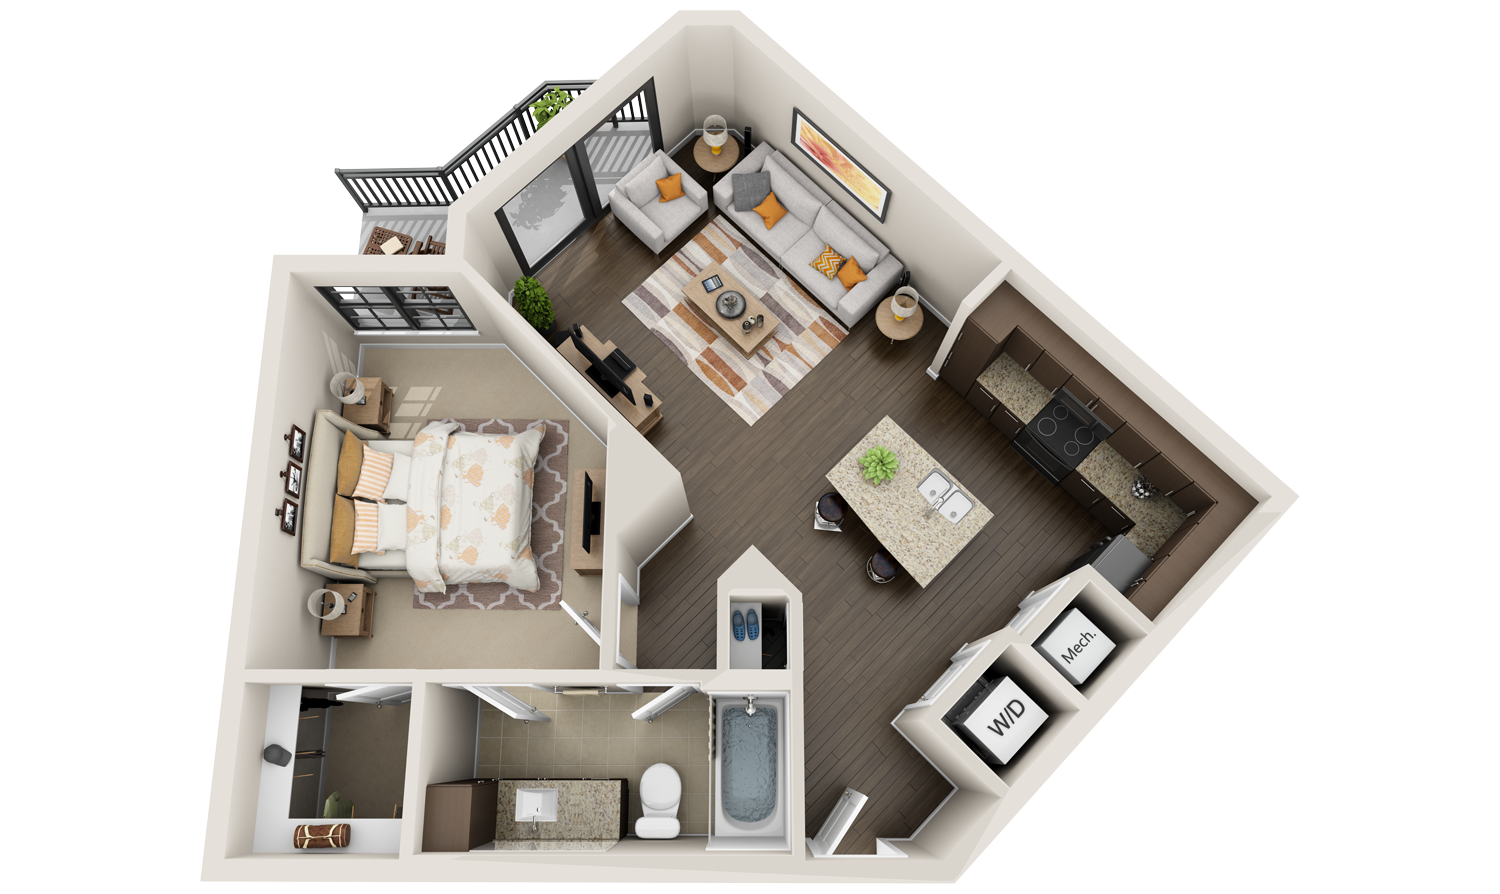 Best 3D Floor Plans for Apartments > Virtual Tours > We